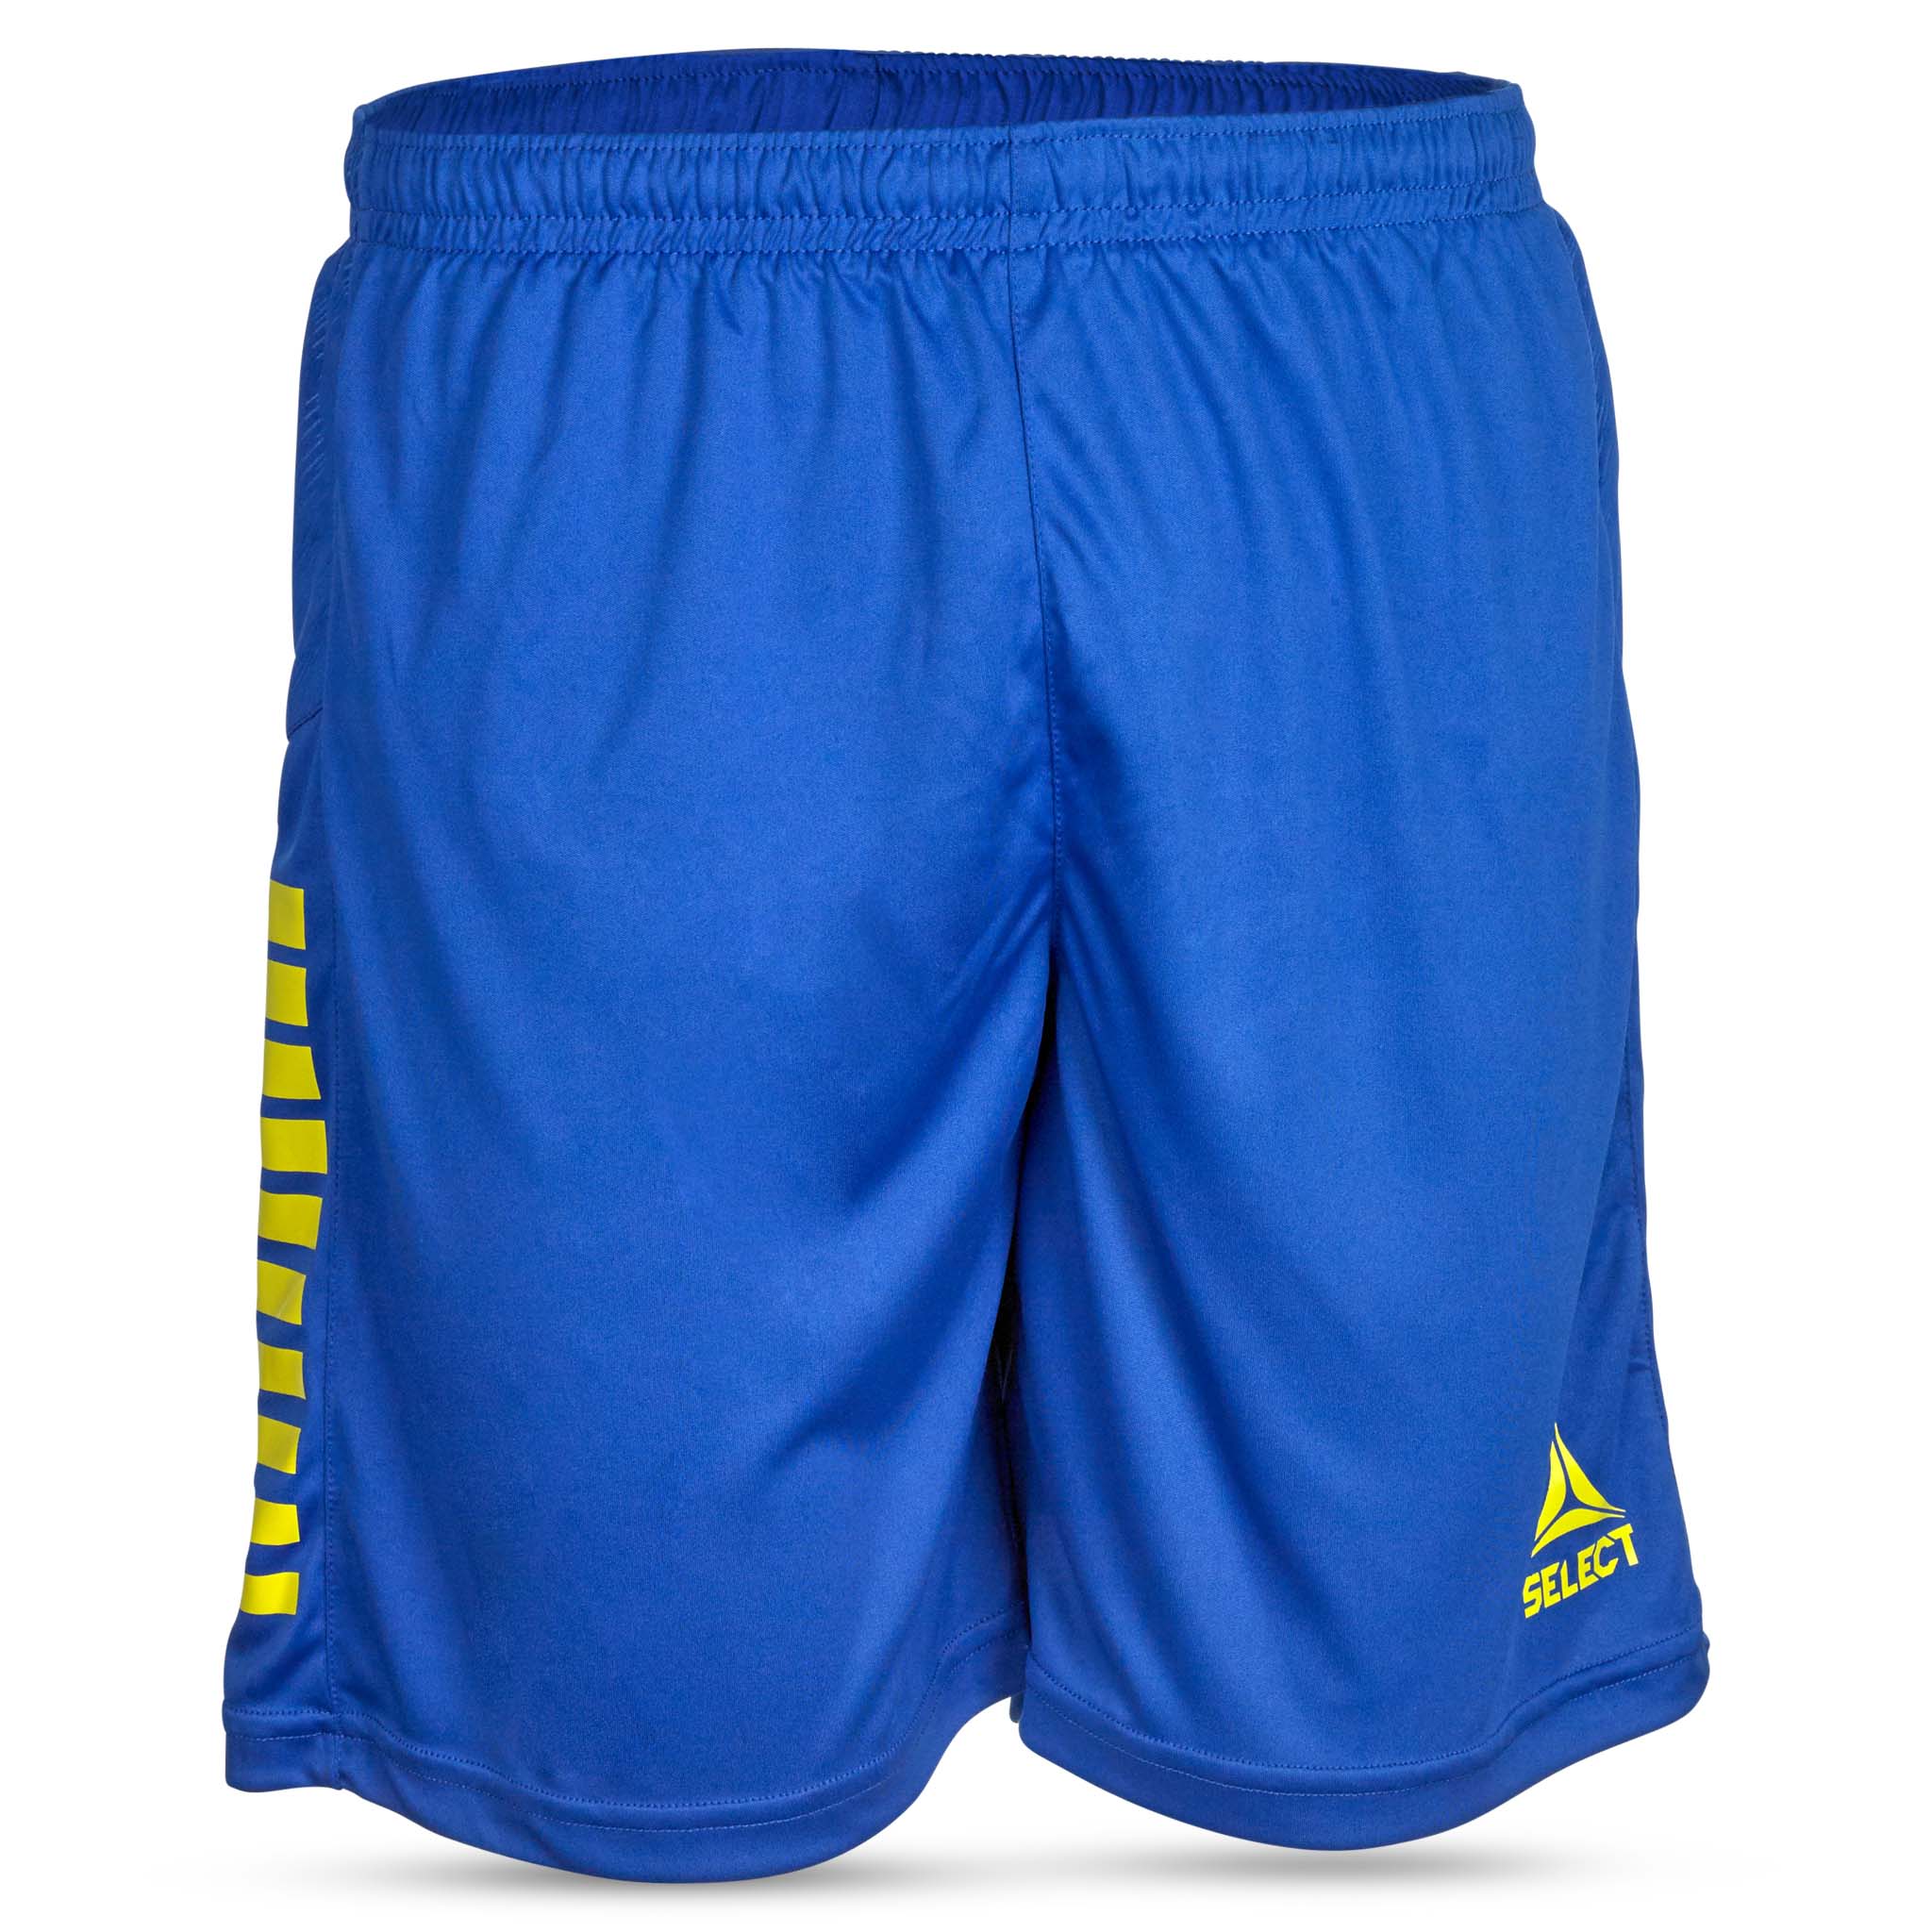 Spain Shorts - Børn #farve_blå/gul